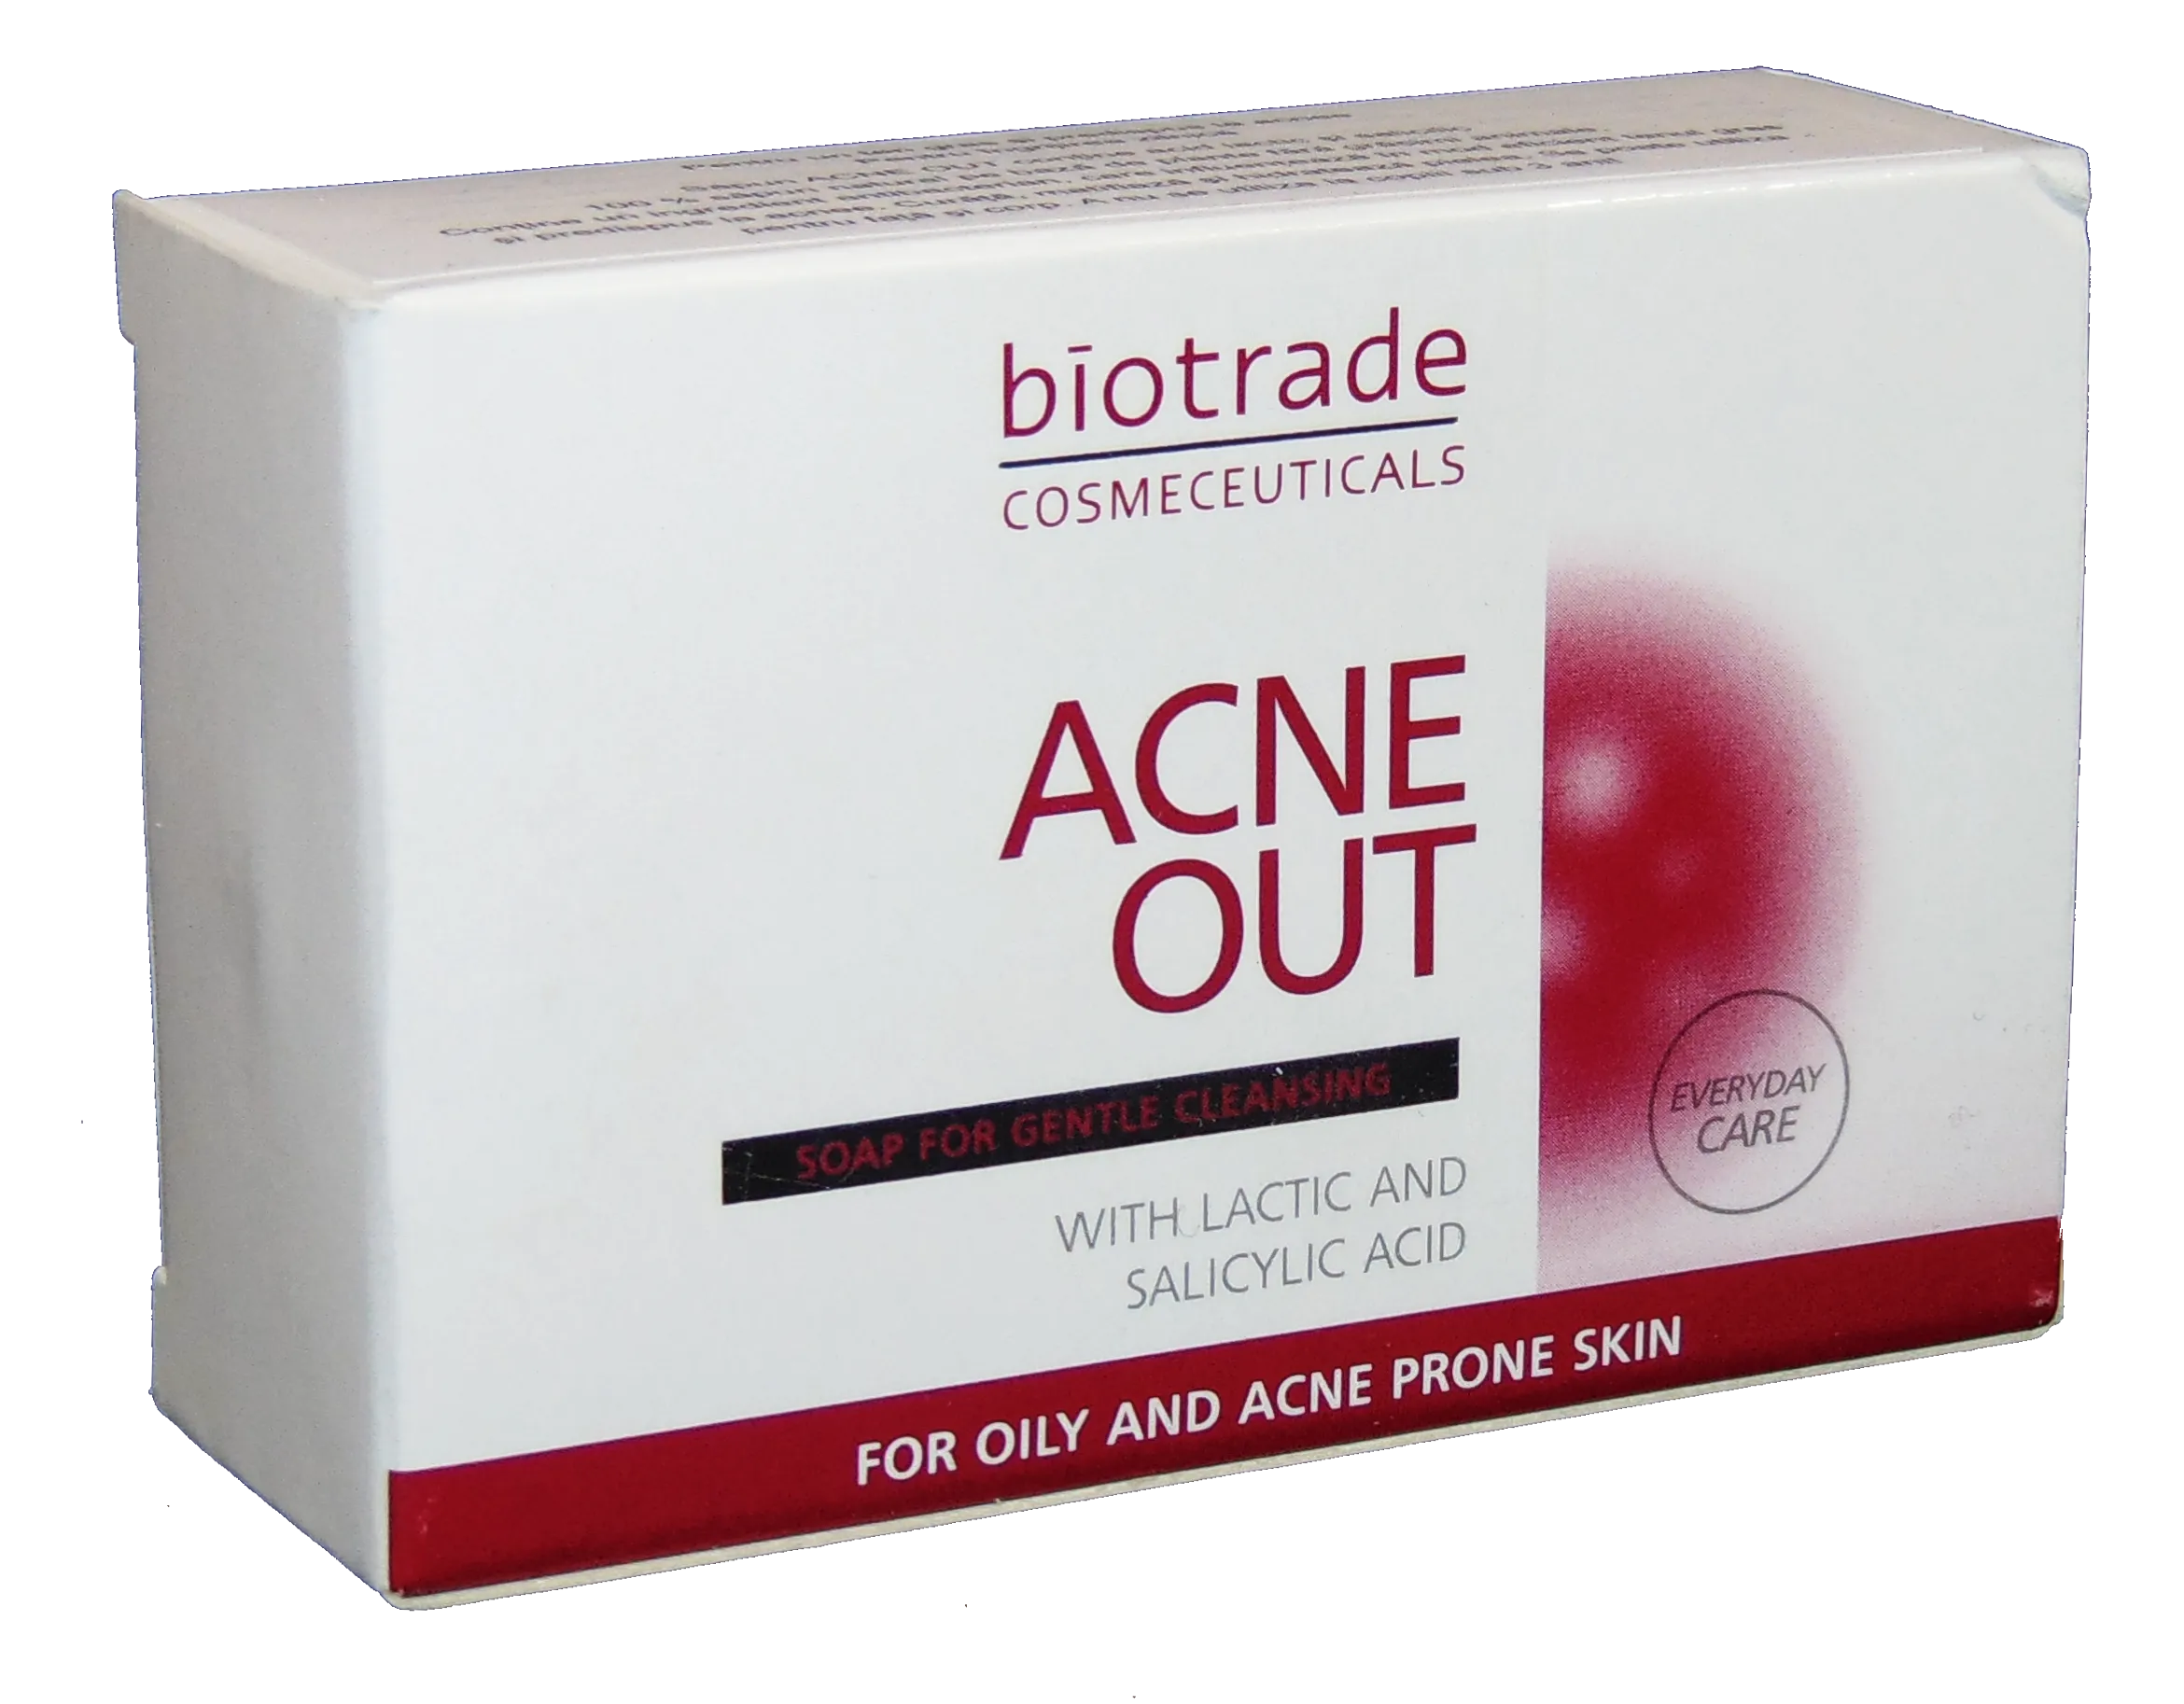 Gel de spalare si curatare - Biotrade Acne Out sapun curatare ten acneic x100g, medik-on.ro